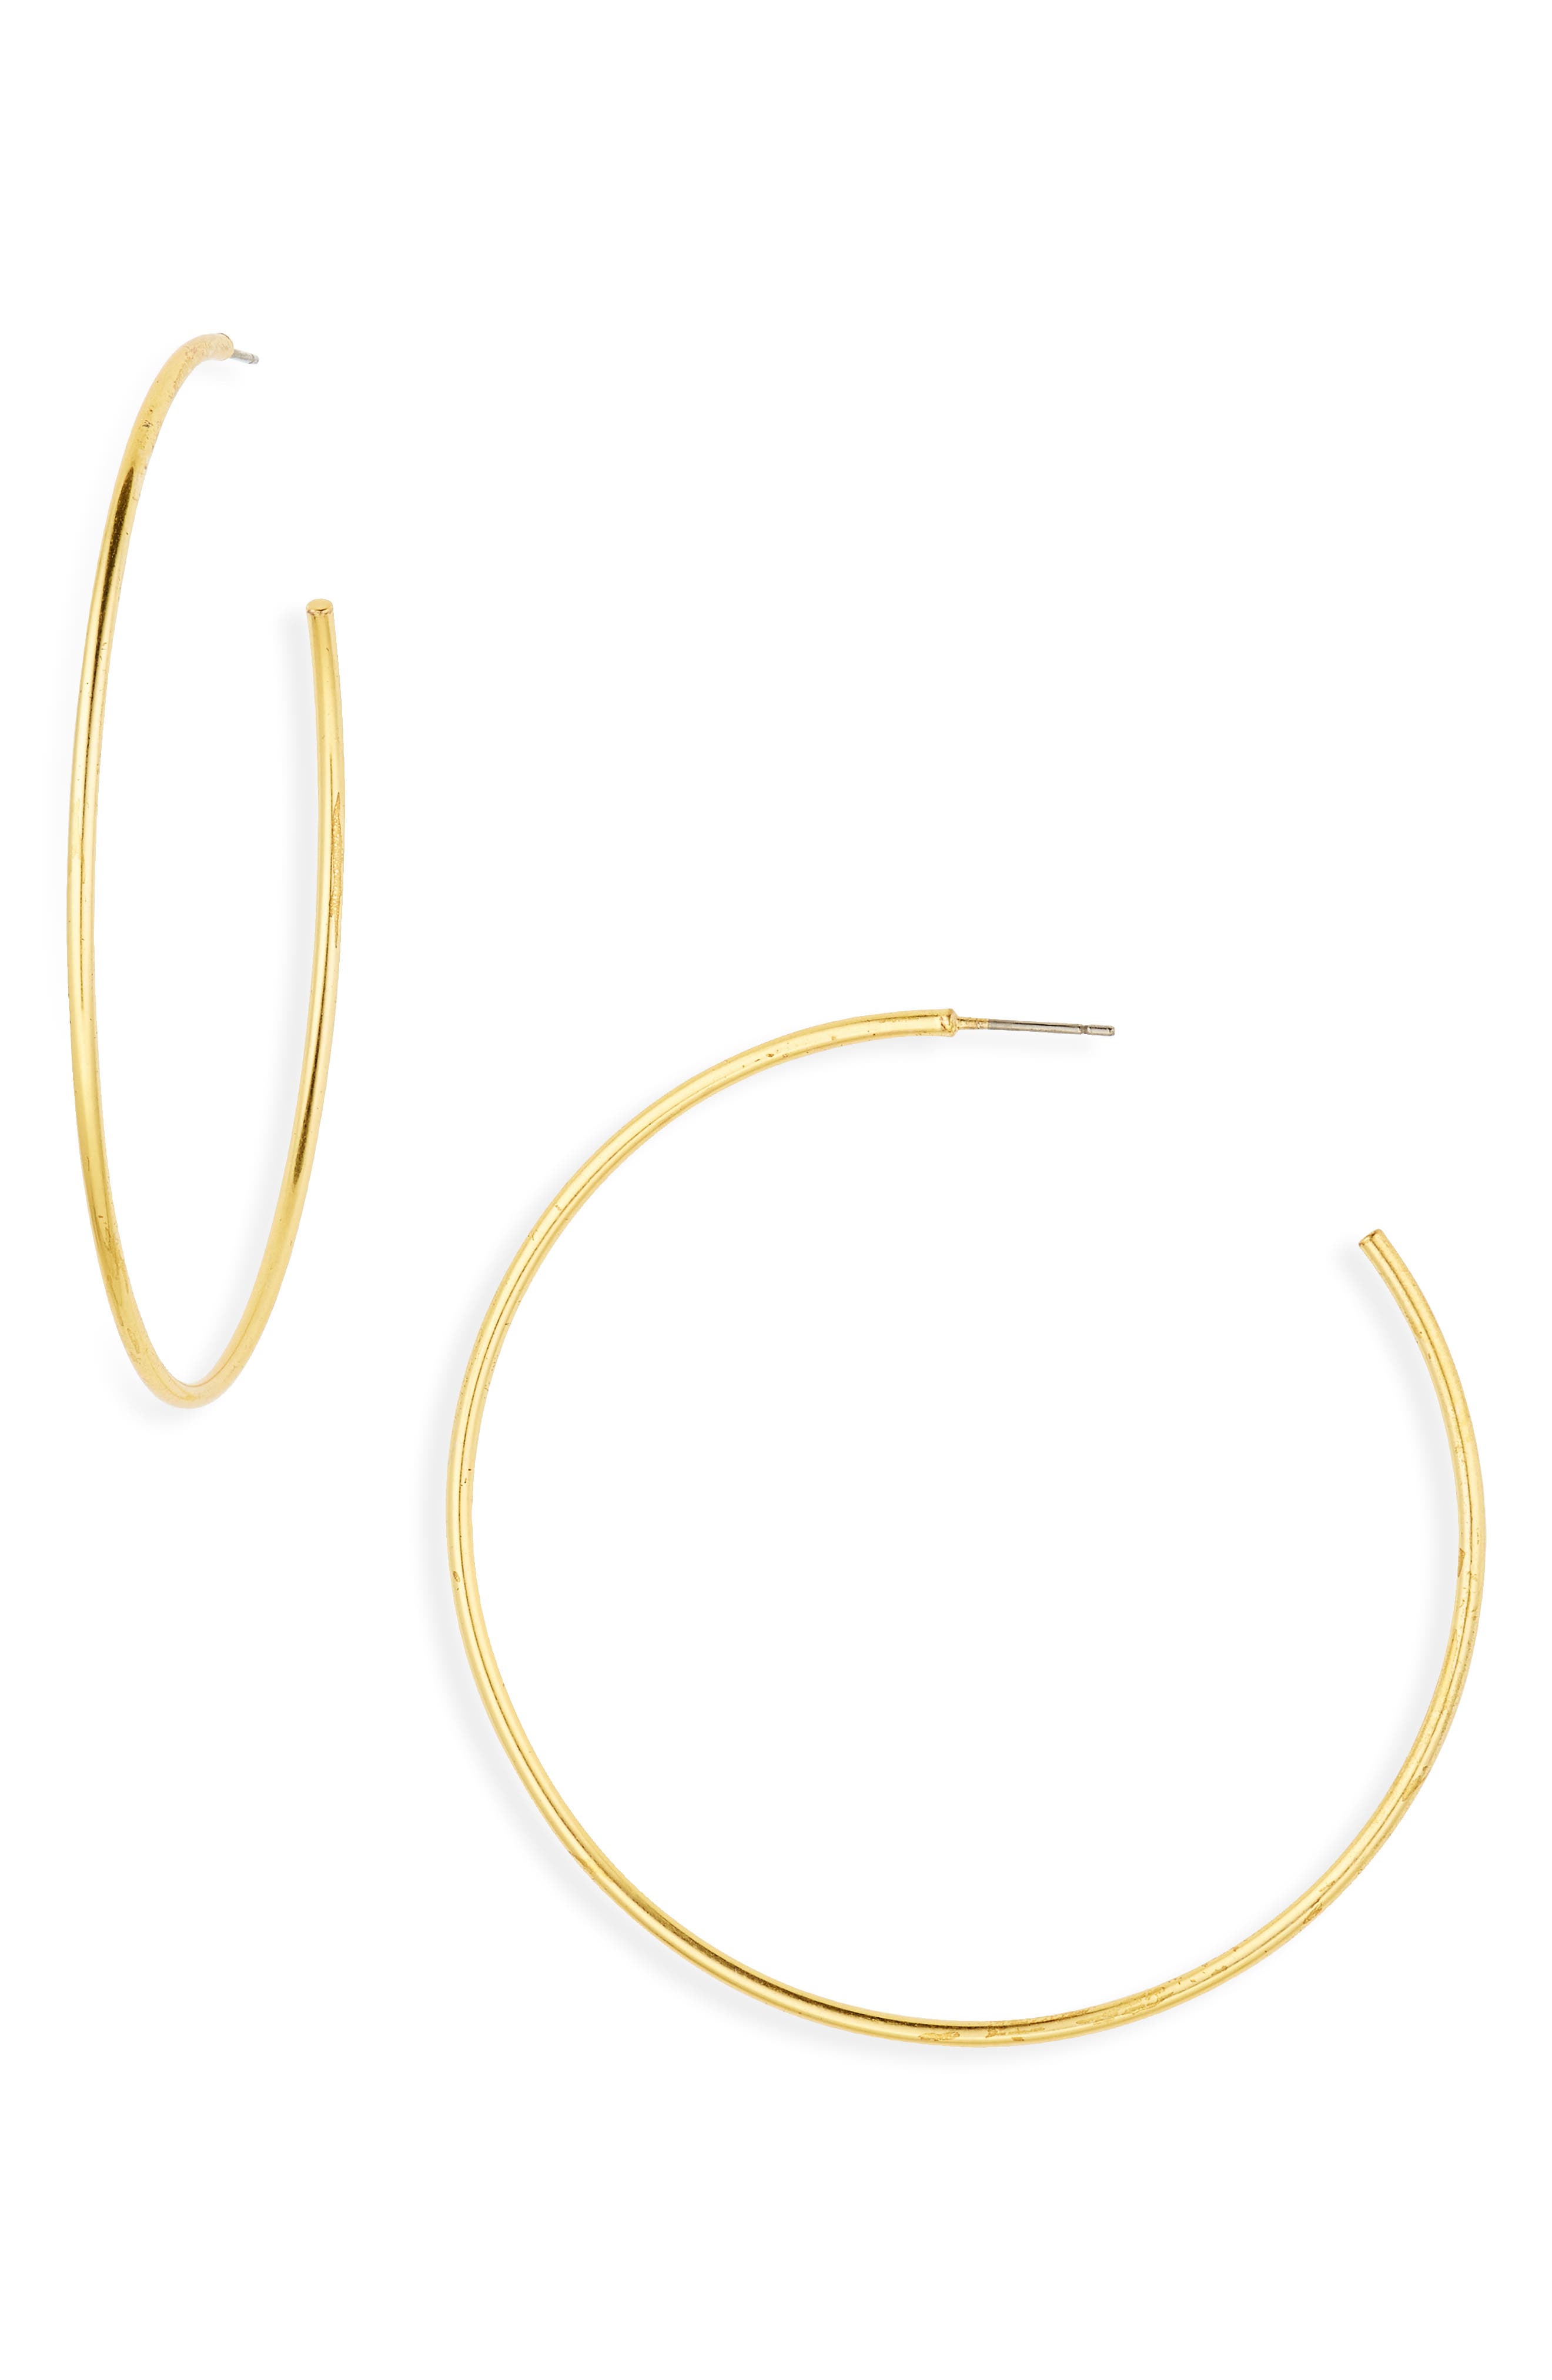 1g .75" Modern Solid Round Circle Hoop Earrings Sterling Silver 